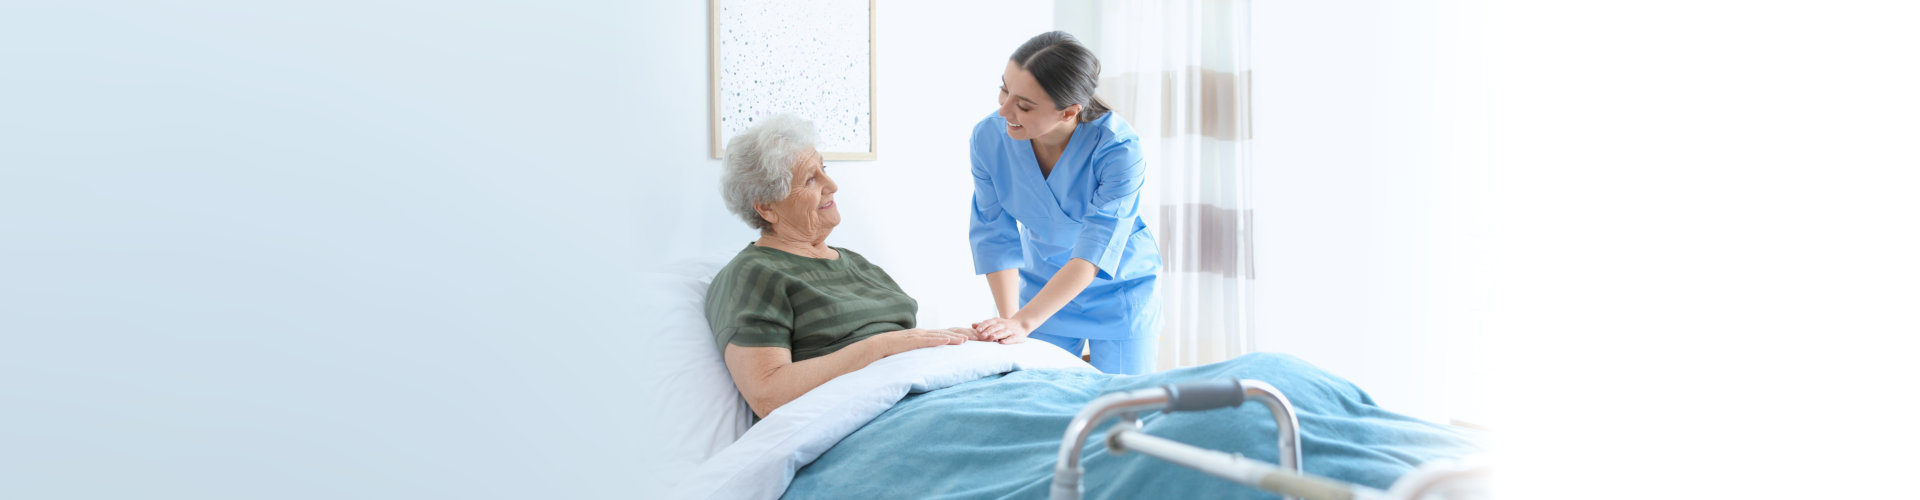 caregiver assisting senior patient